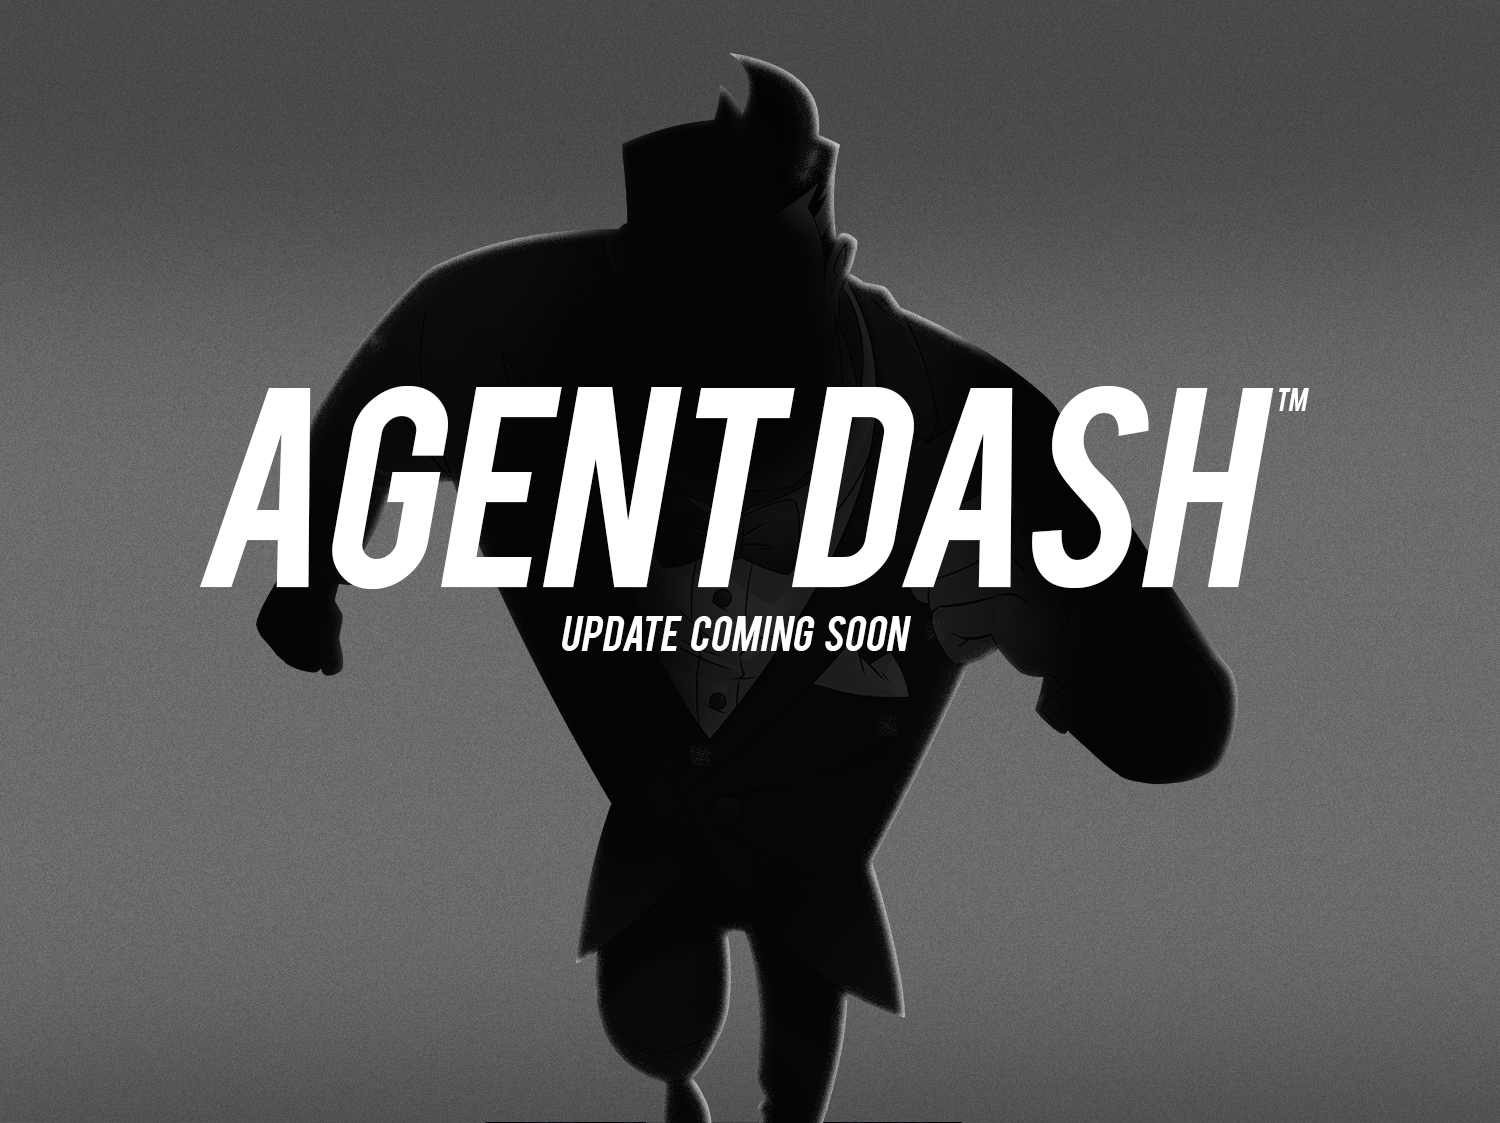 Agent Dash 2015 update teaser